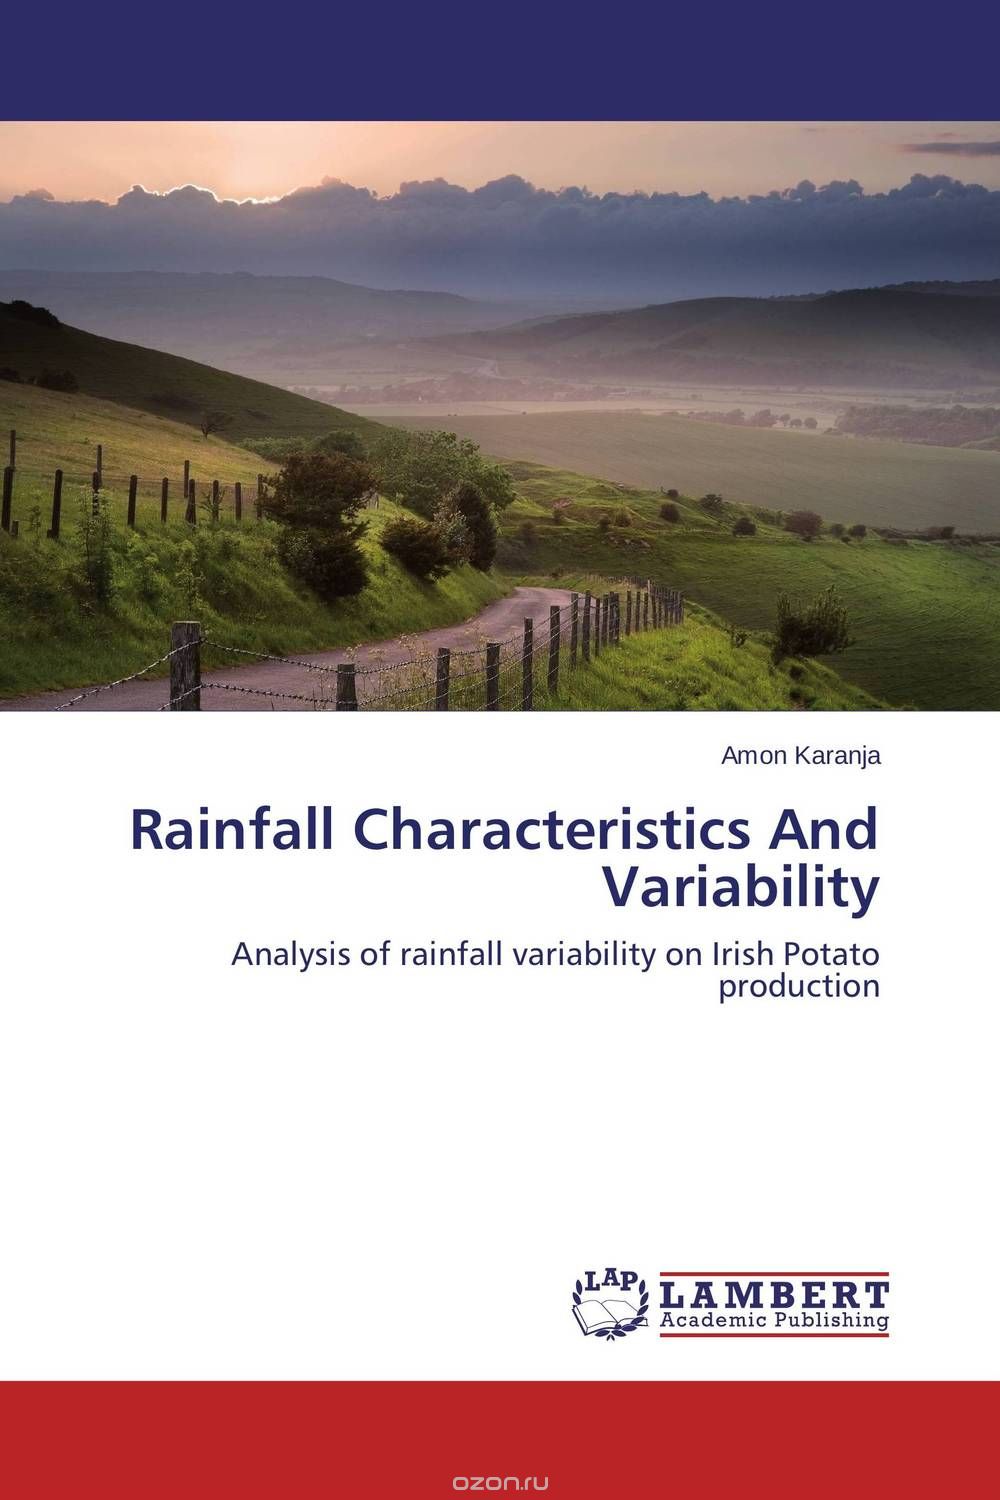 Скачать книгу "Rainfall Characteristics And Variability"